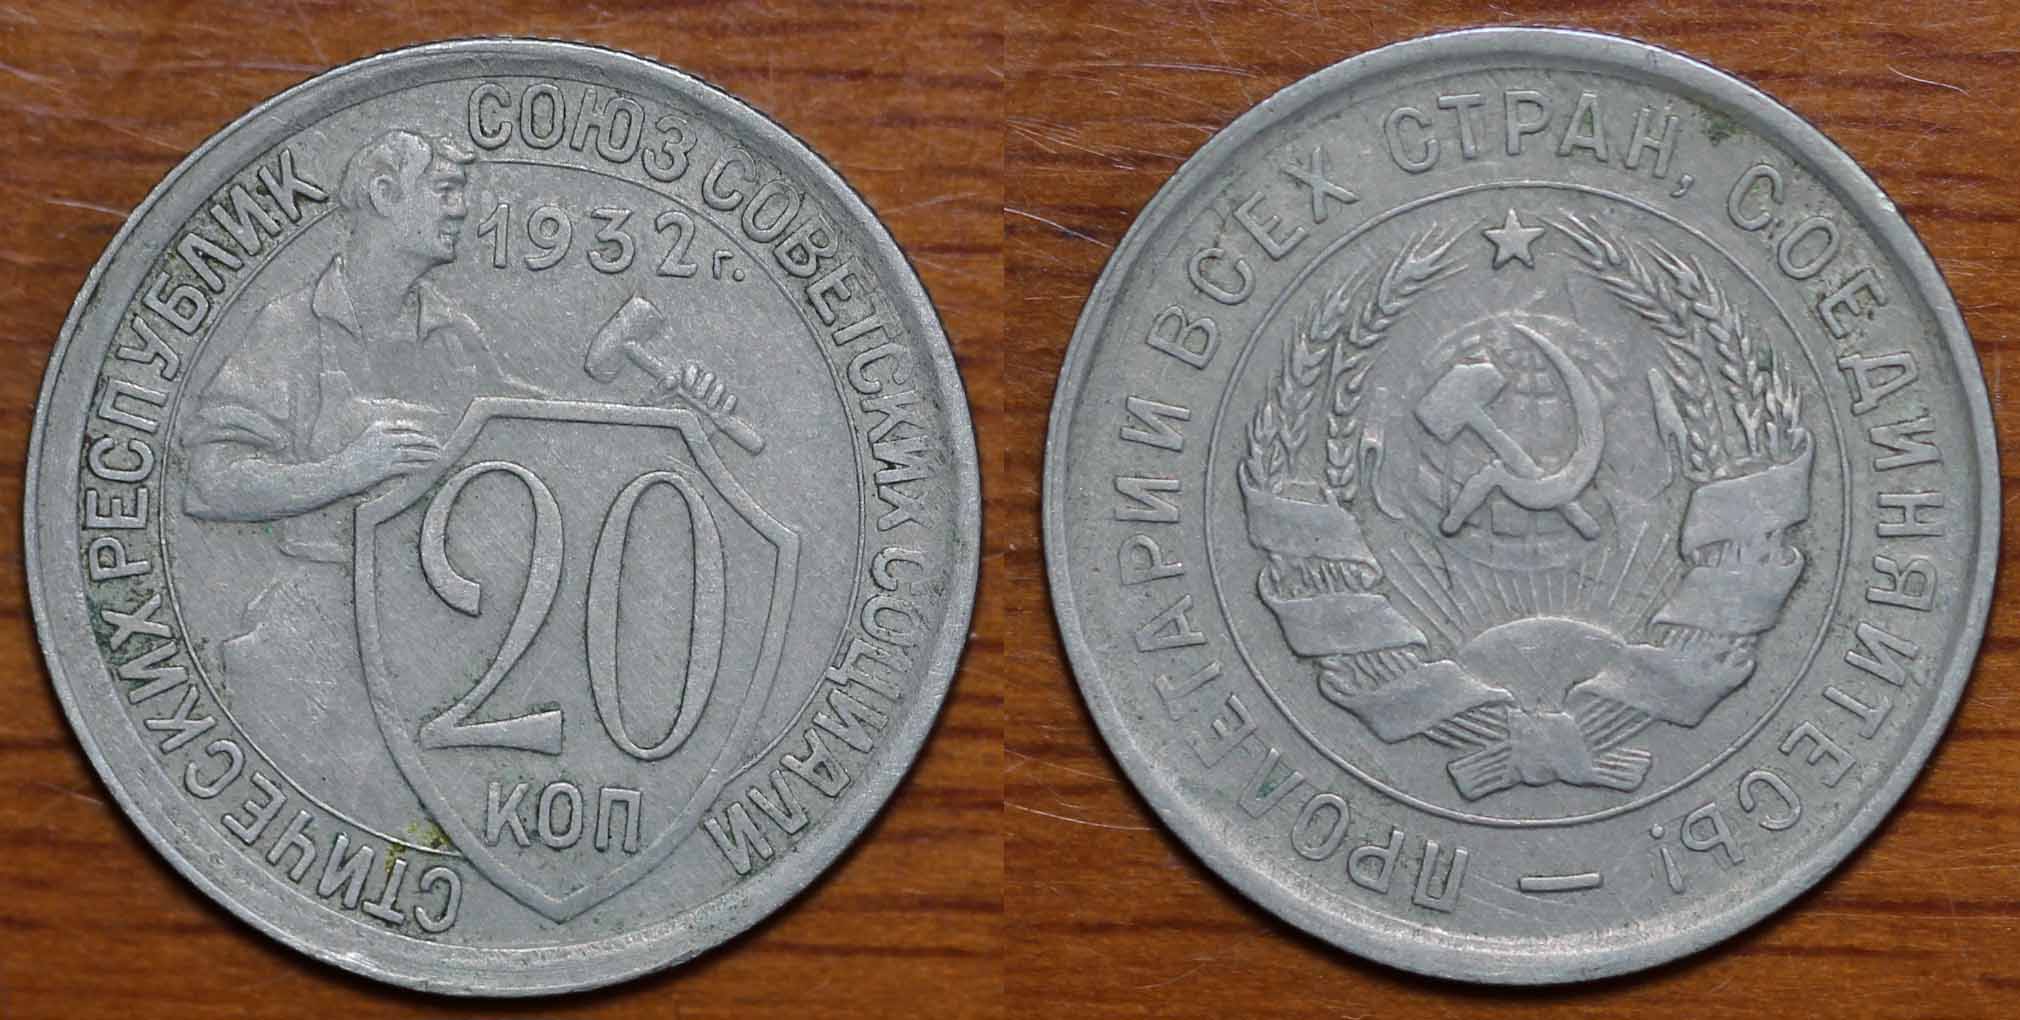 俄罗斯-前苏联硬币1932年g 20戈比